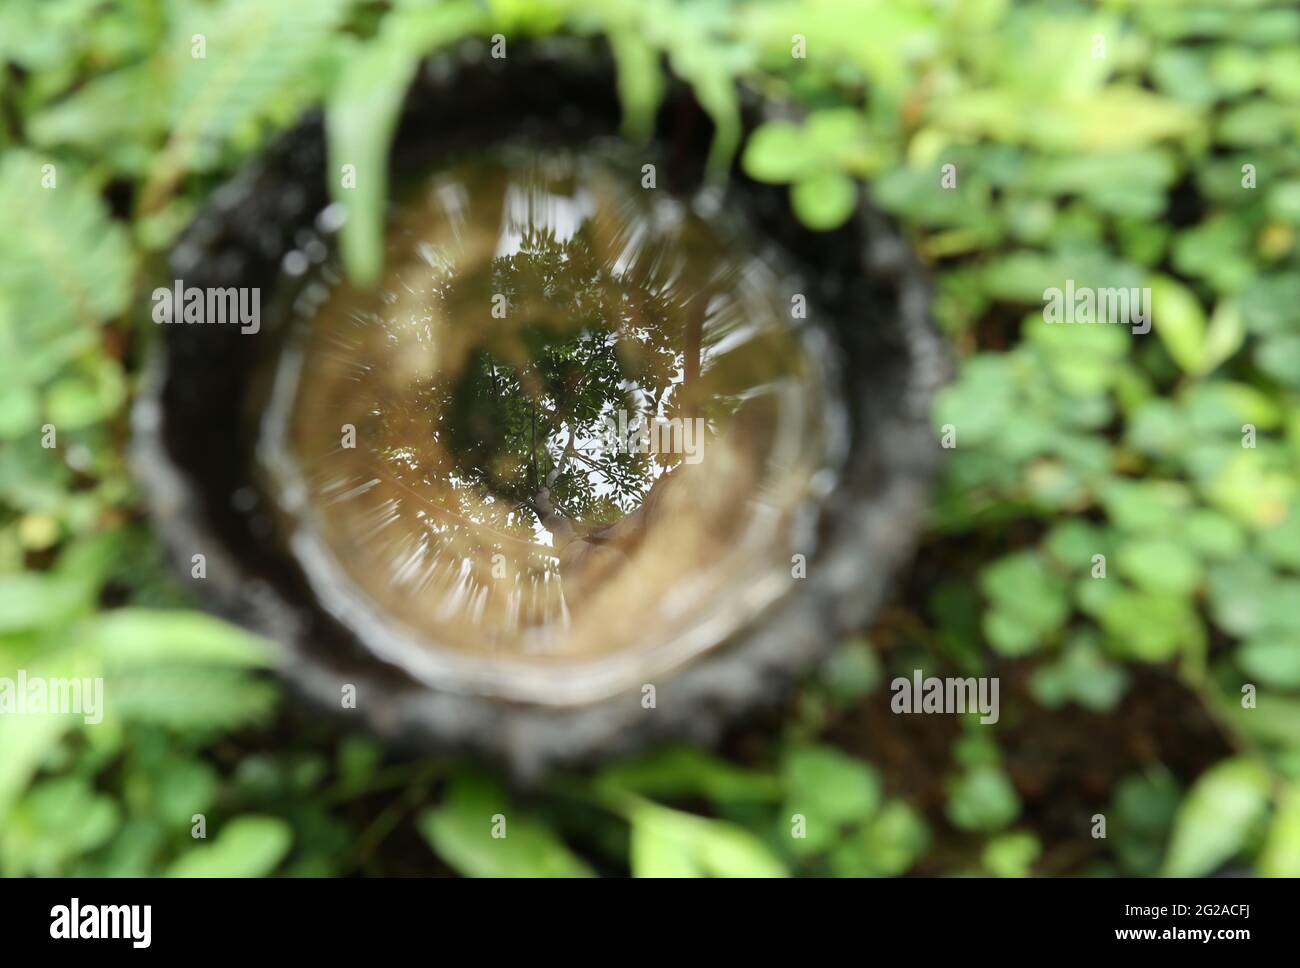 Une coquille de noix de coco pour recueillir le latex de caoutchouc tombe au pied d'un arbre de caoutchouc et reflète l'arbre de caoutchouc et le ciel sur son eau de pluie Banque D'Images